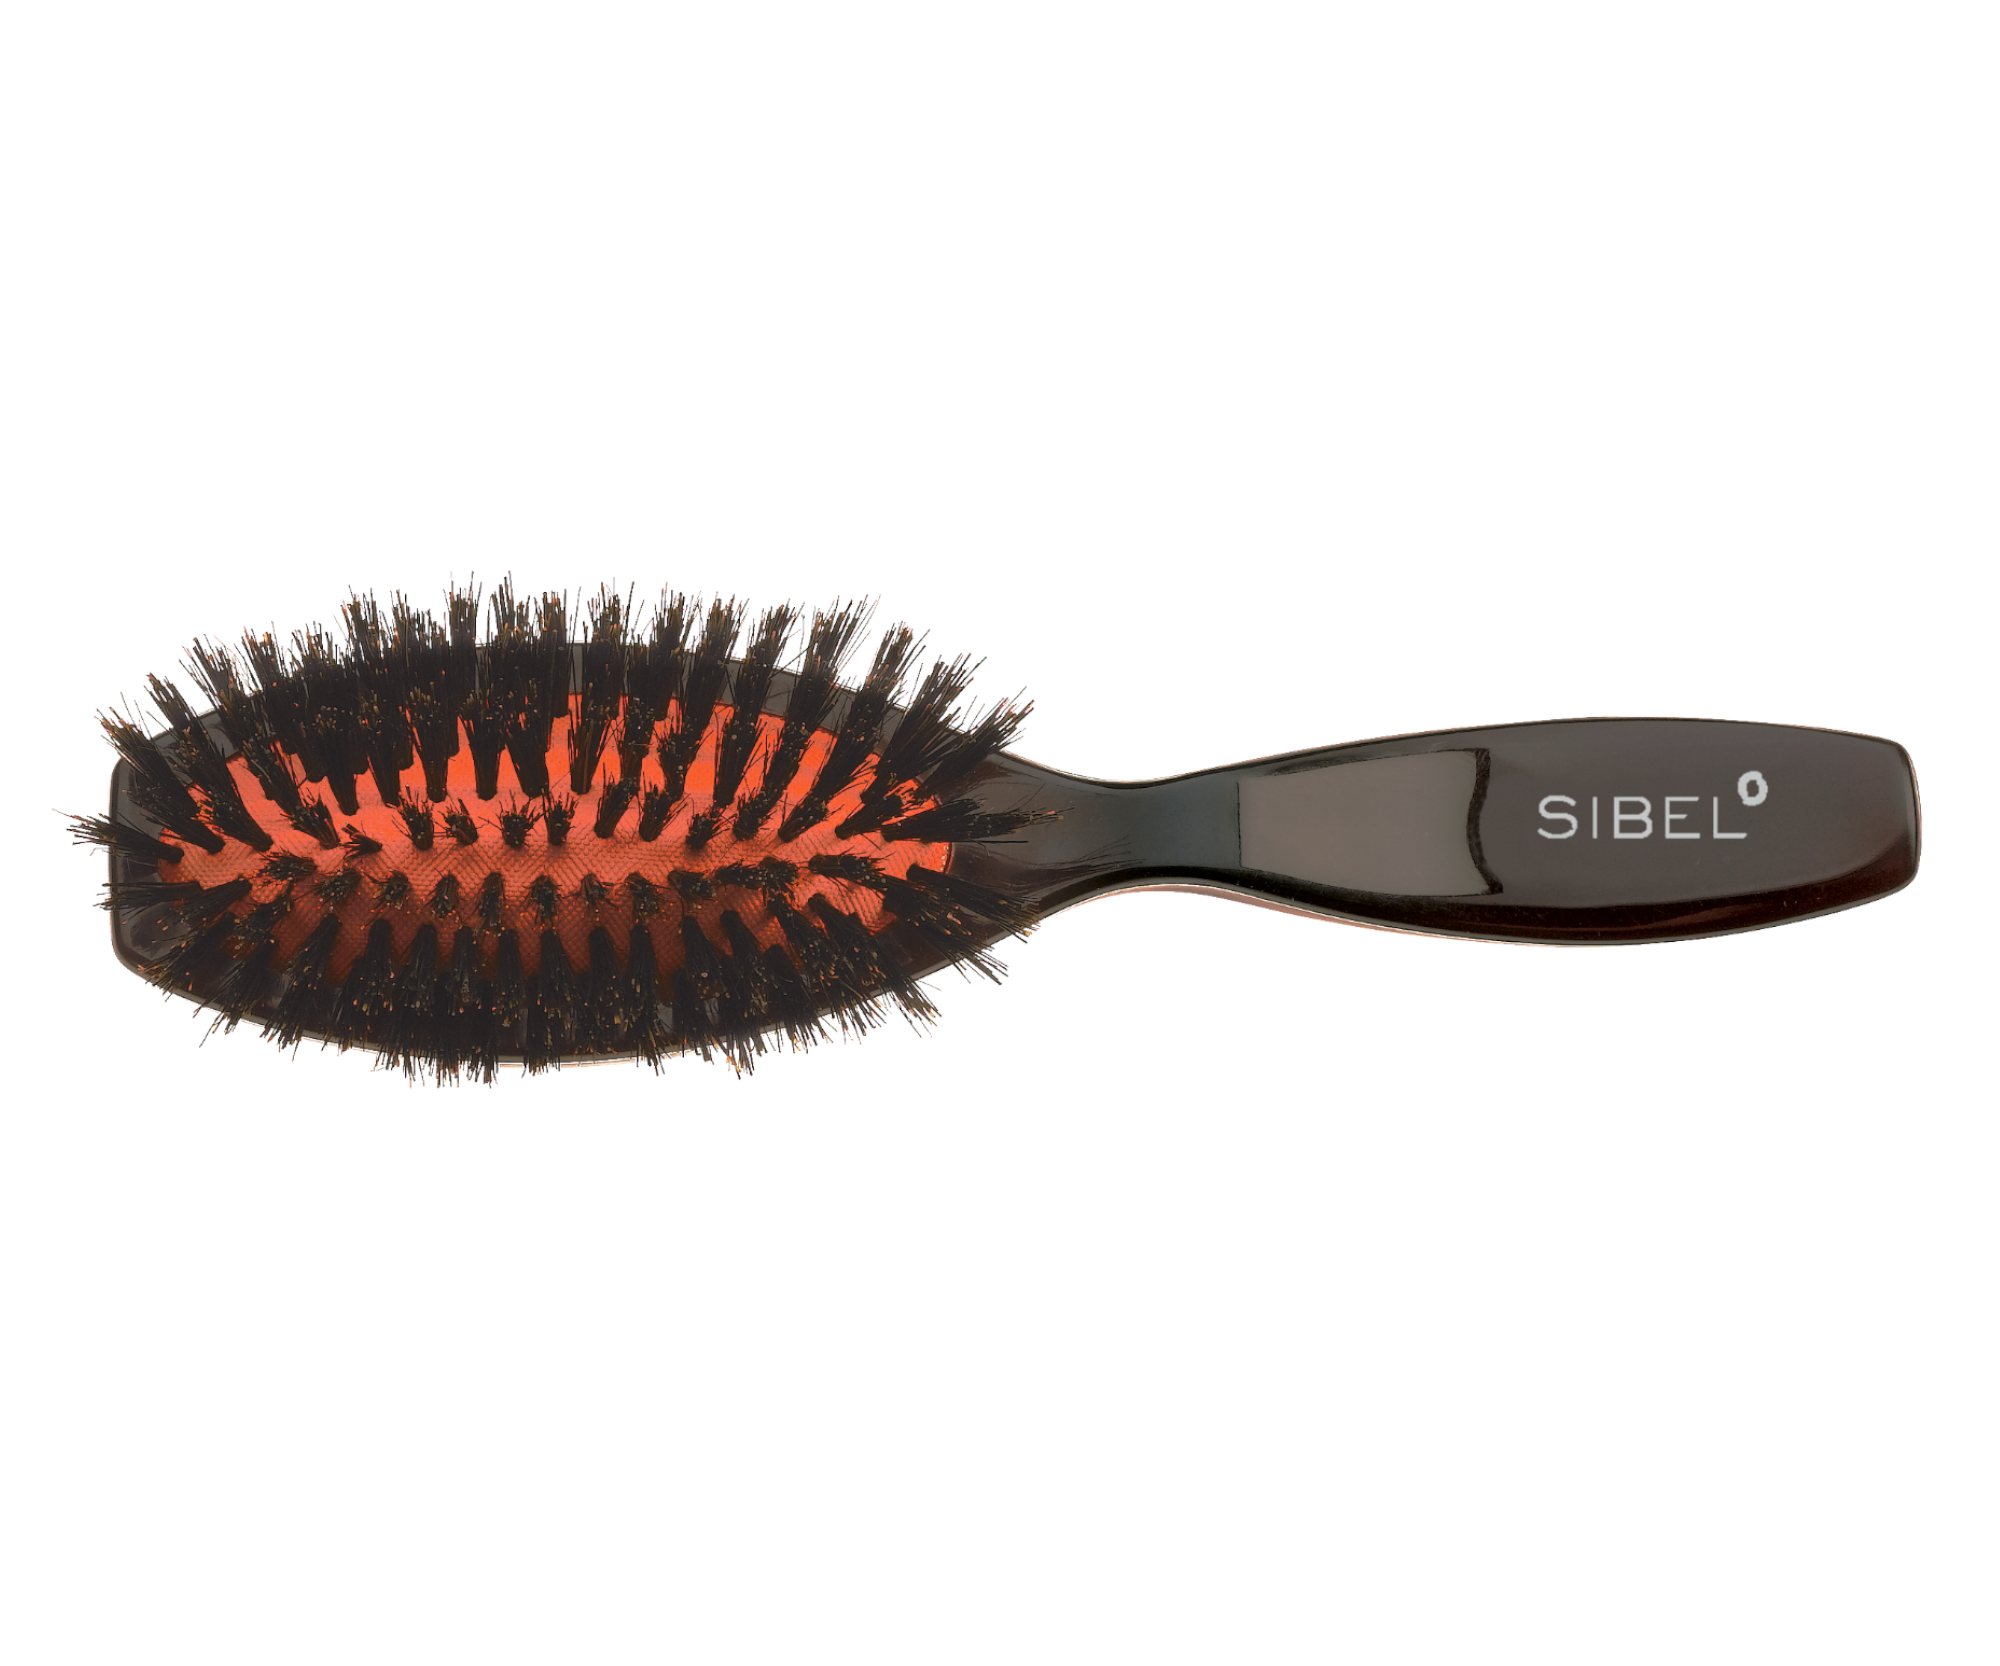 Oválný kartáč na vlasy s kančími štětinami Sibel Classic 73 - 42 x 182 mm (8454542) + dárek zdarma